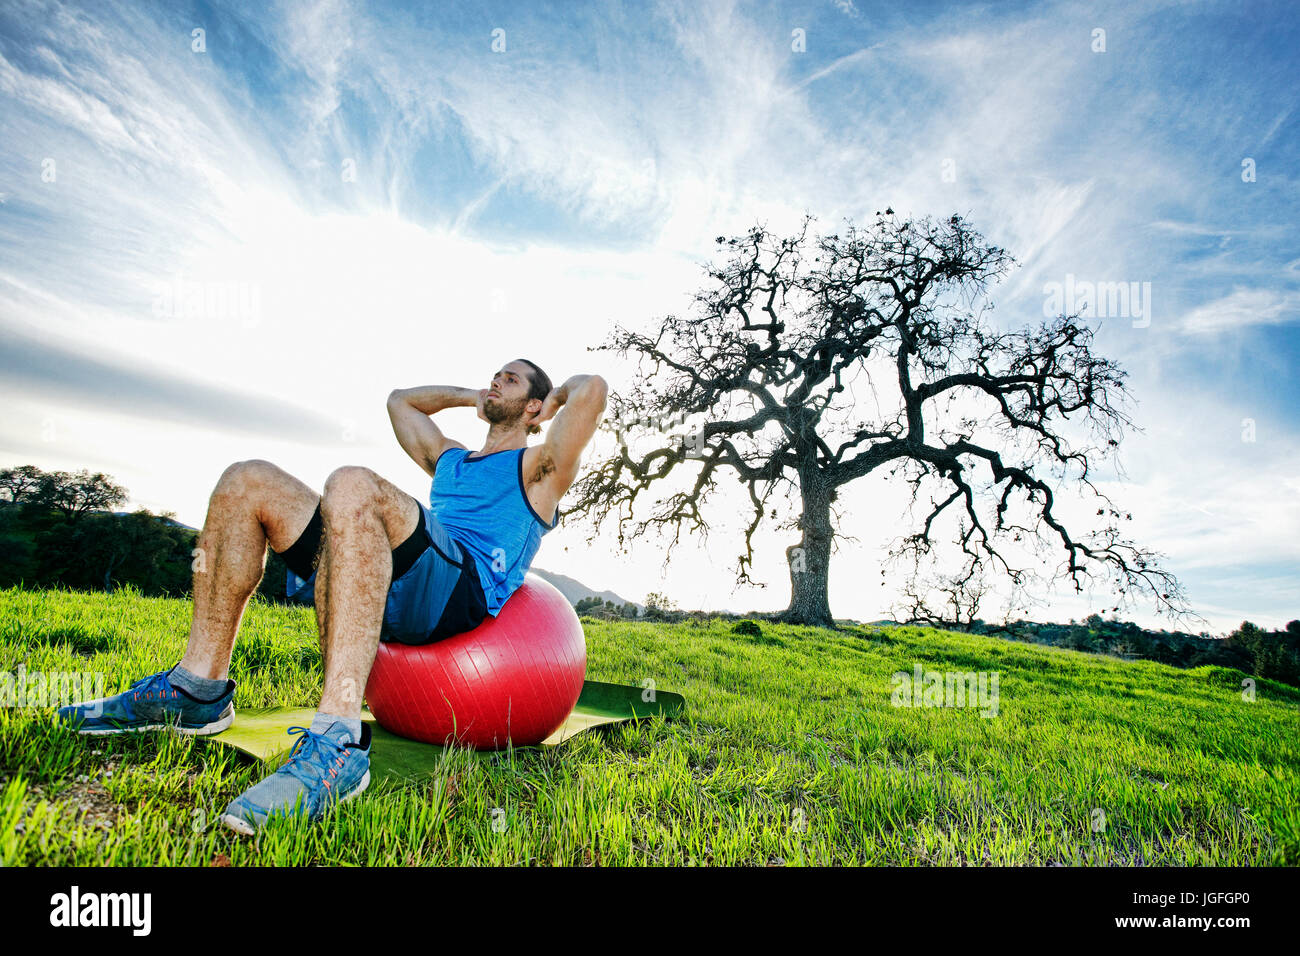 Kaukasischen Mann Sit auf Fitness-Ball im Feld in der Nähe von Baum Stockfoto